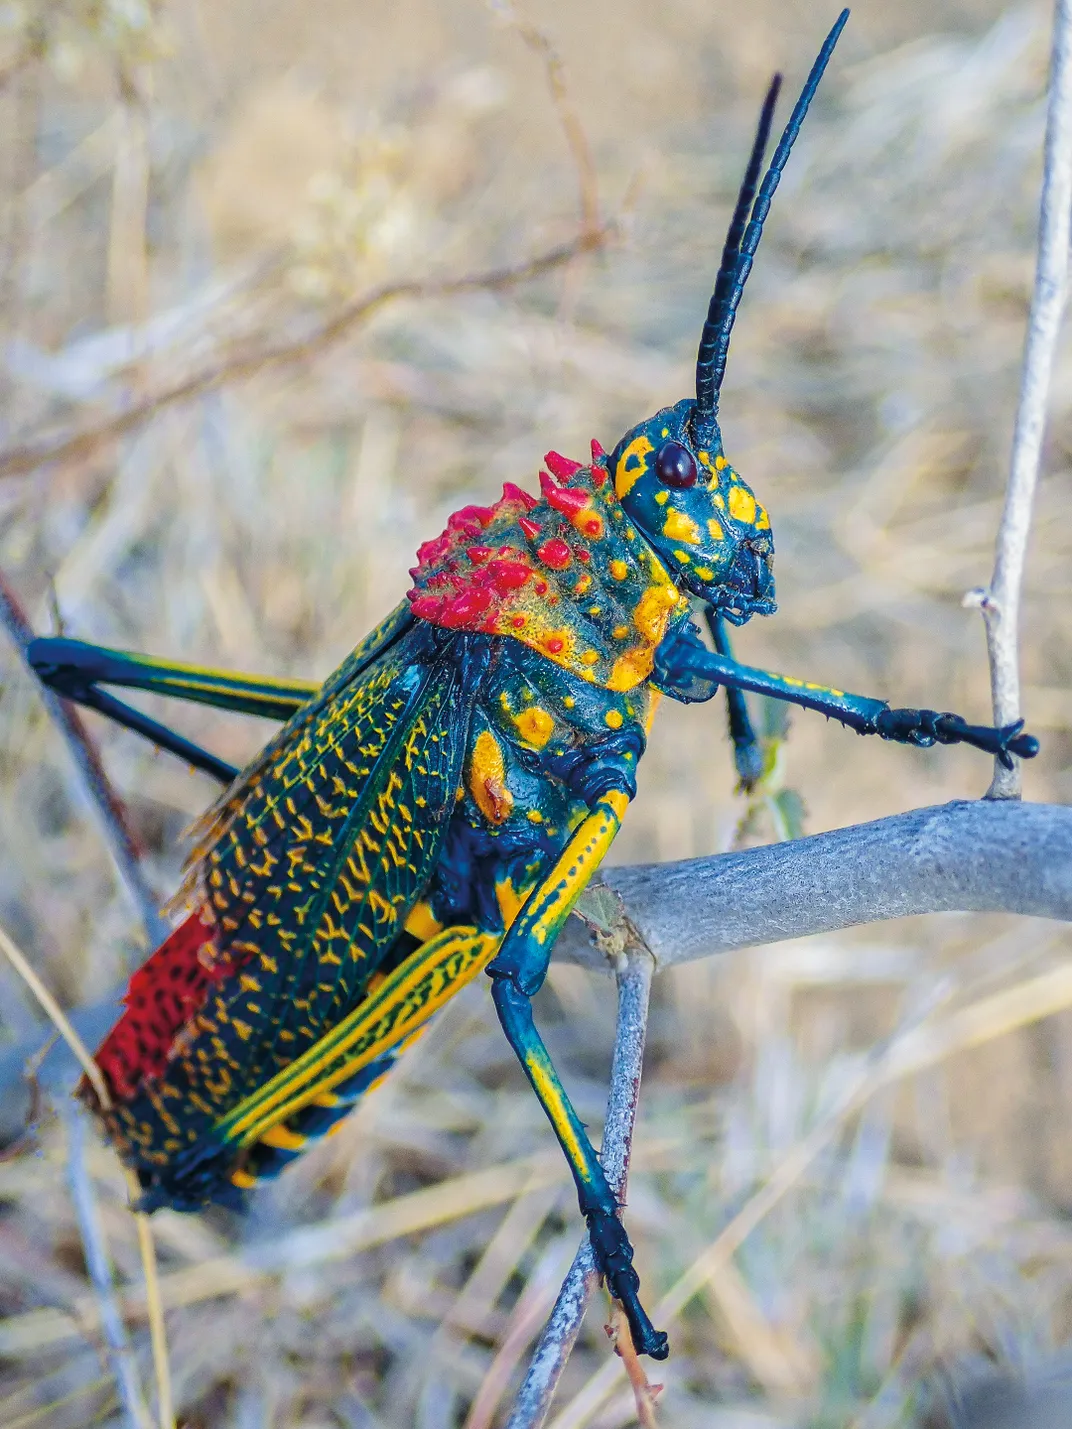 Madagascar grasshopper